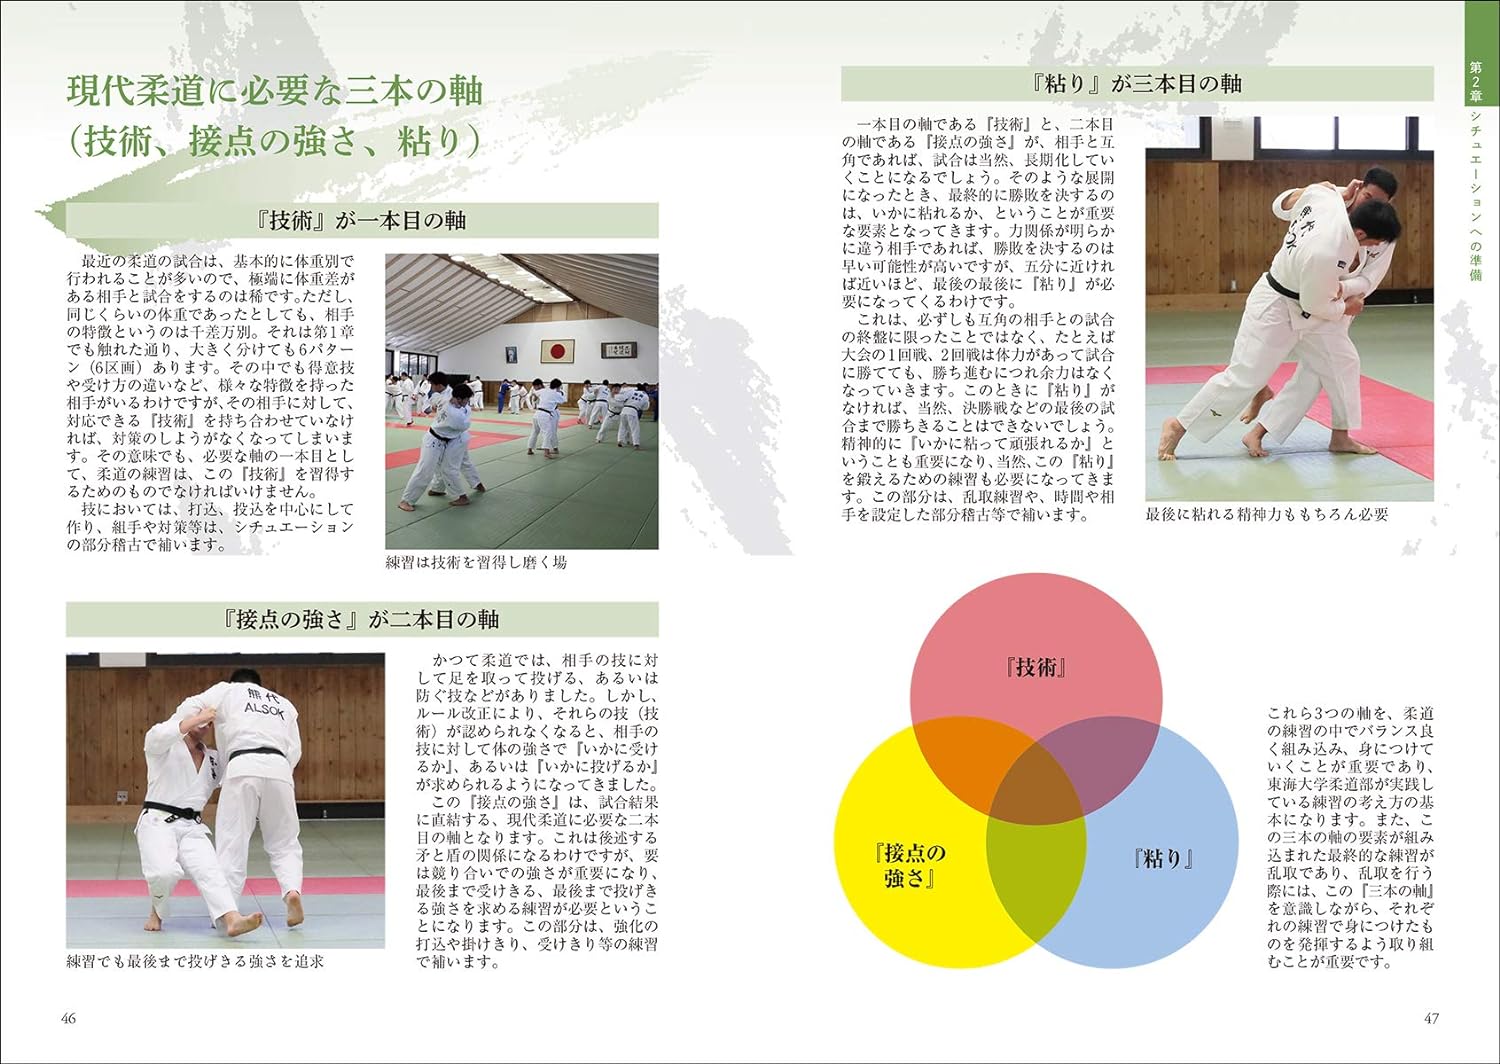 Tokaidai Ryu Dojo Winning Method Book by Kenichiro Kamizu